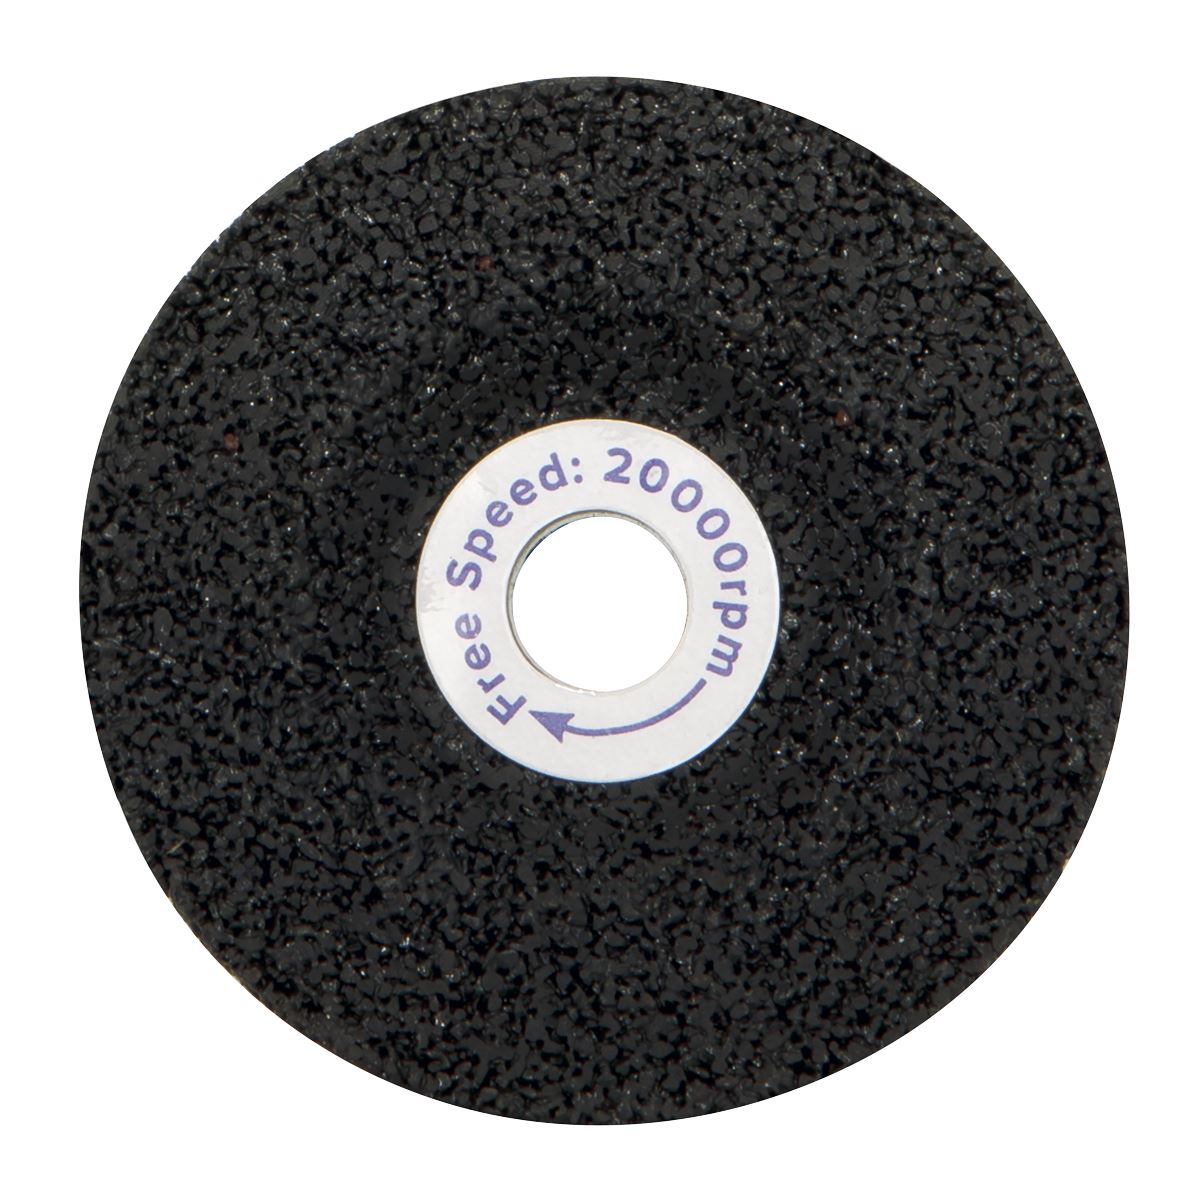 Sealey Grinding Disc Ø58 x 4mm Ø9.5mm Bore